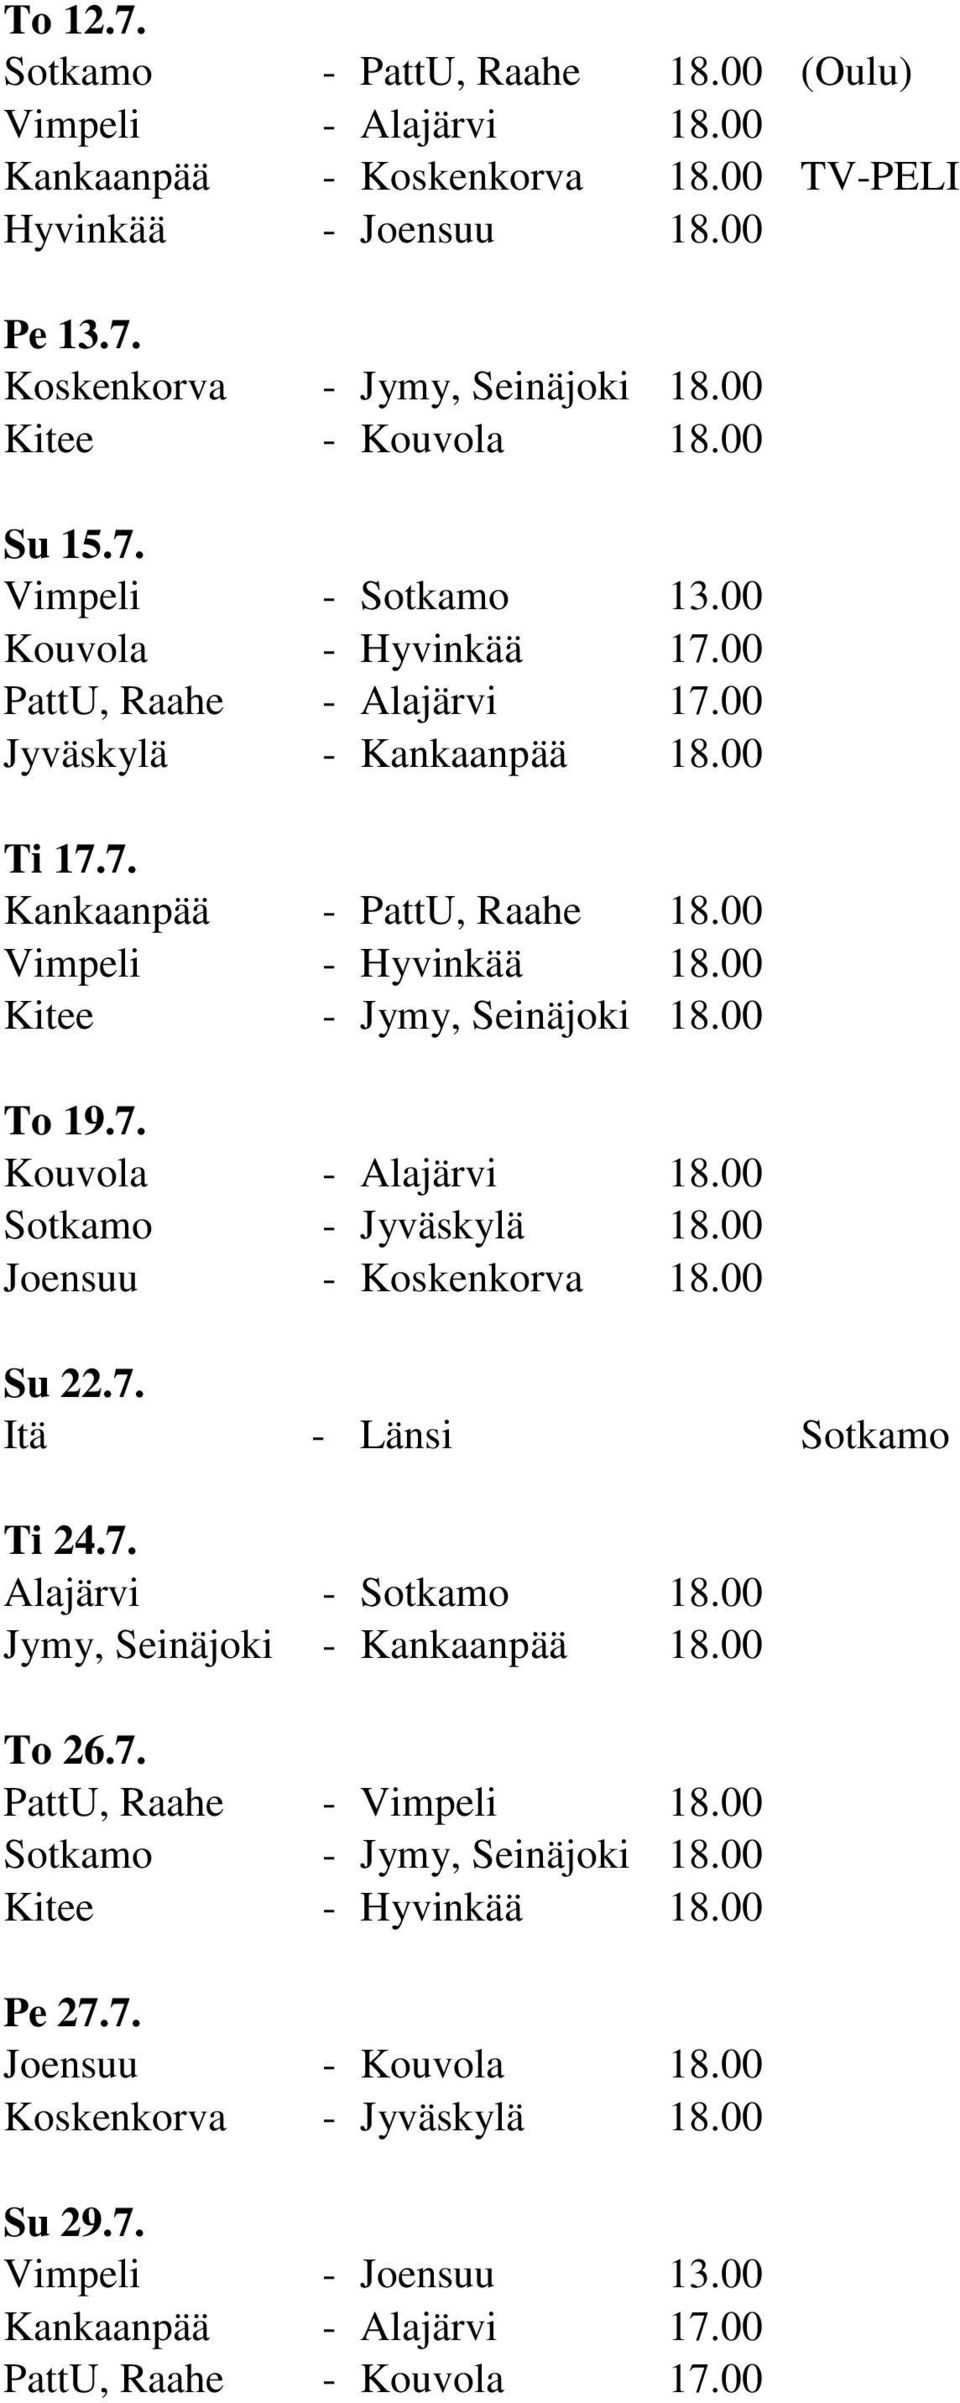 00 Kitee - Jymy, Seinäjoki 18.00 To 19.7. Kouvola - Alajärvi 18.00 Sotkamo - Jyväskylä 18.00 Joensuu - Koskenkorva 18.00 Su 22.7. Itä - Länsi Sotkamo Ti 24.7. Alajärvi - Sotkamo 18.